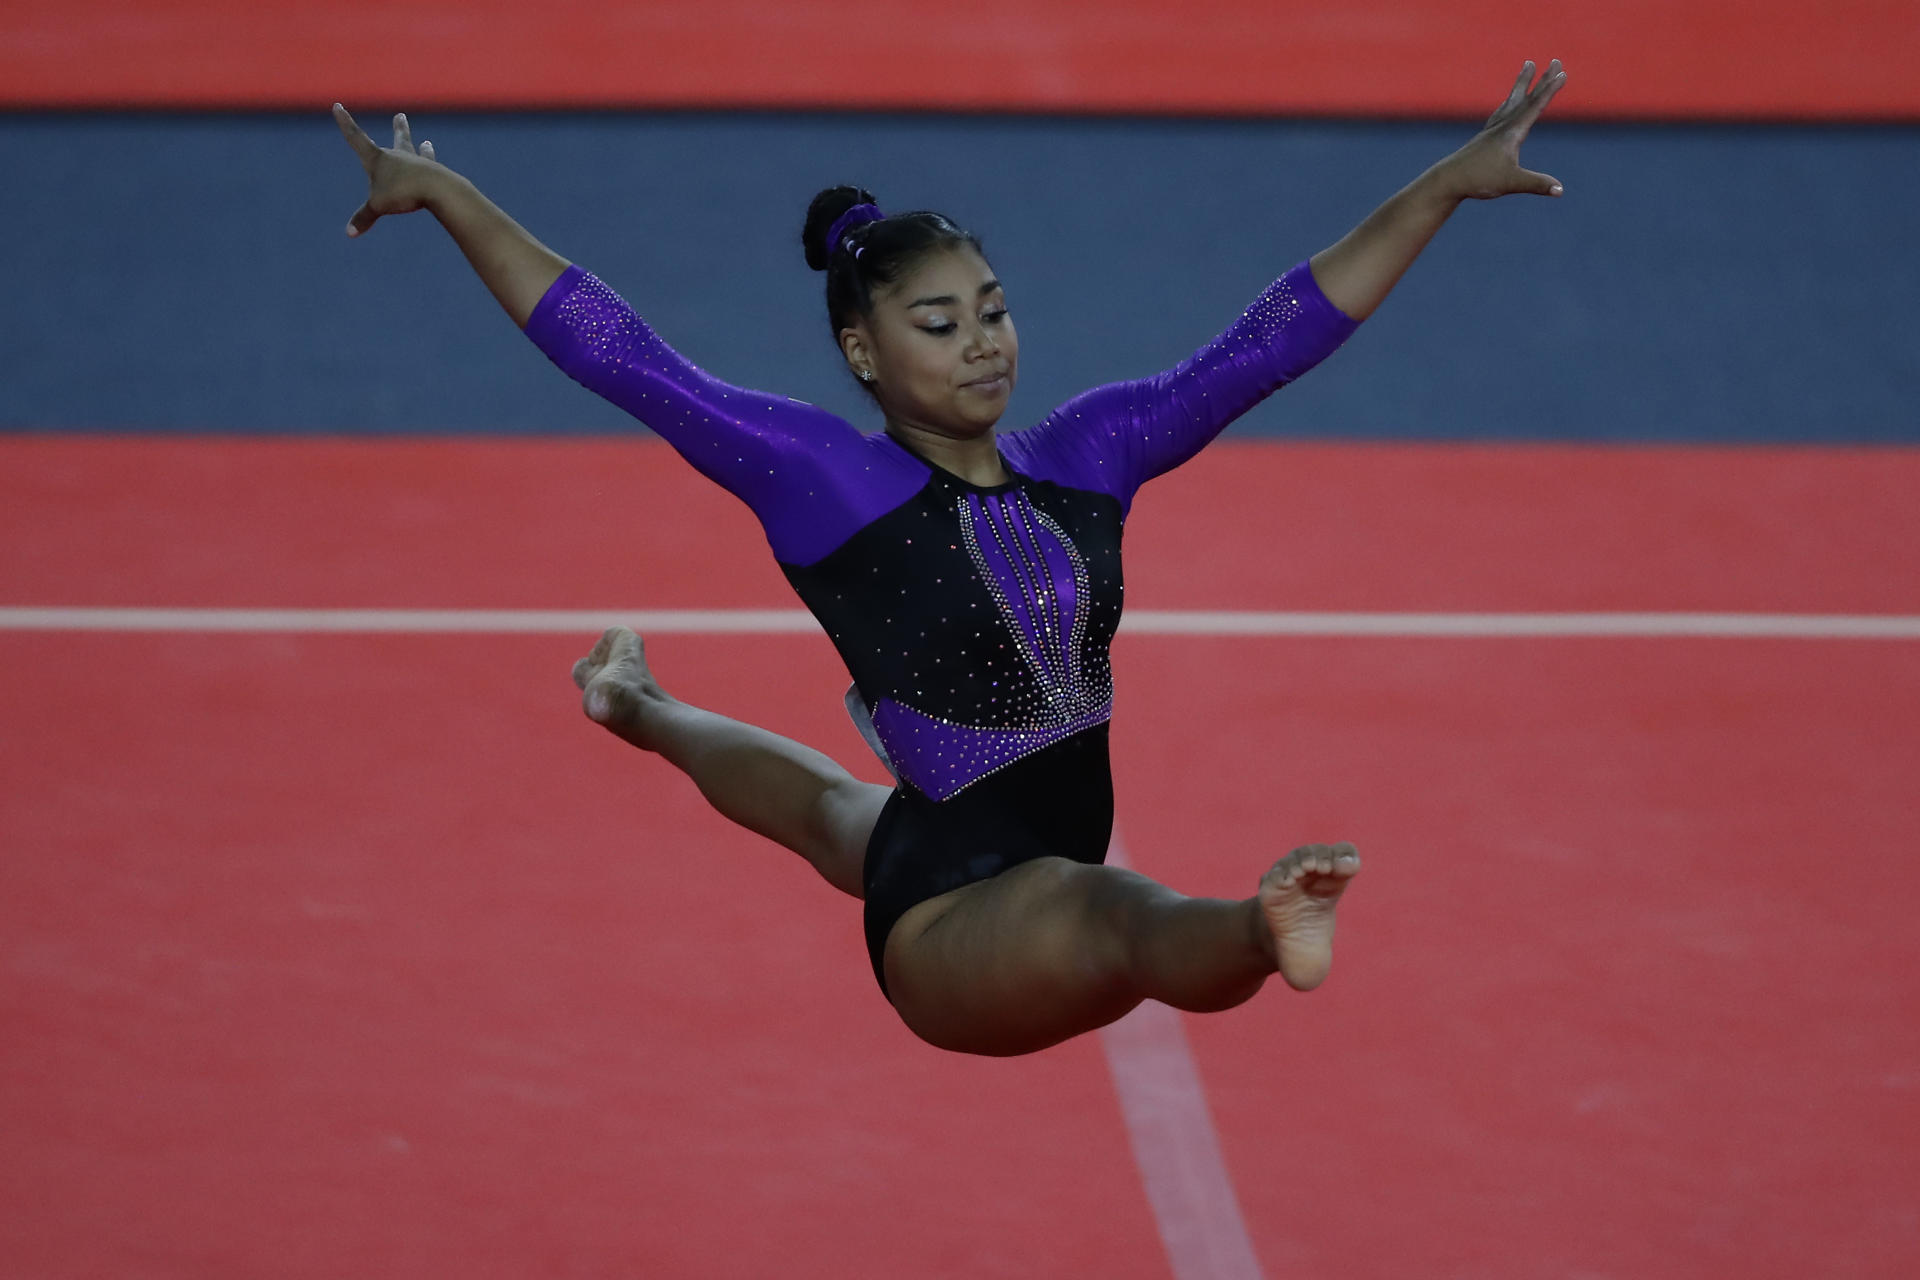 La gimnasta panameña Hillary Heron, tras los pasos de Biles en su primer mundial